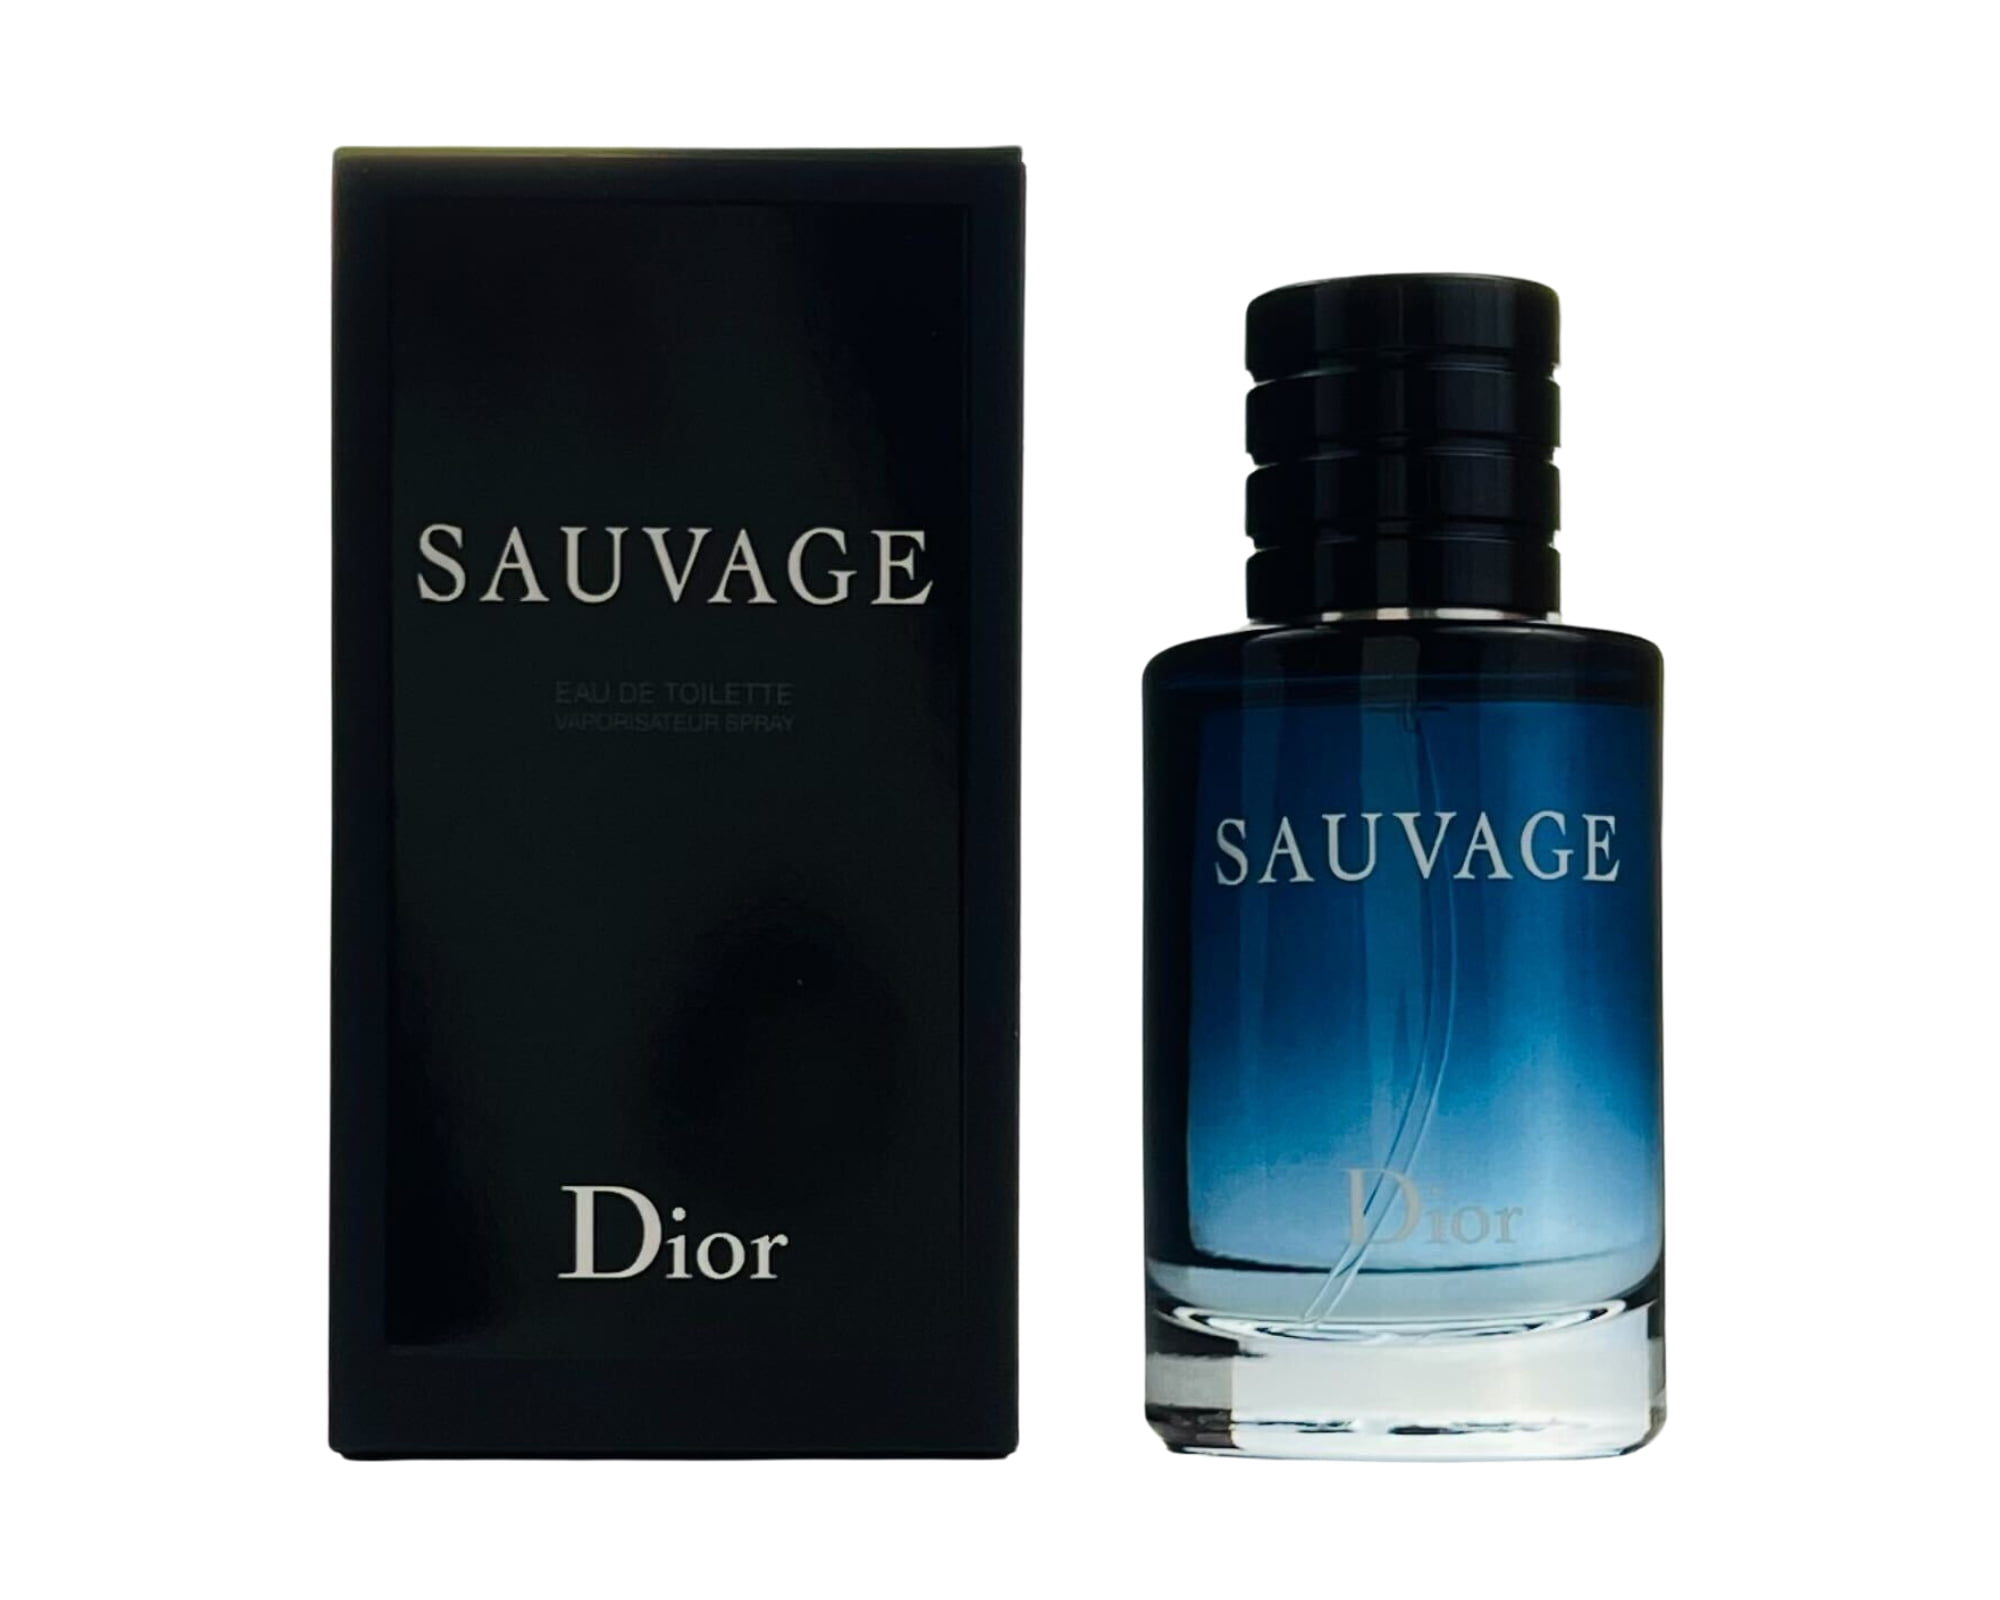 Dior Sauvage Eau de Toilette, Cologne for Men, 6.8 Oz - Walmart.com